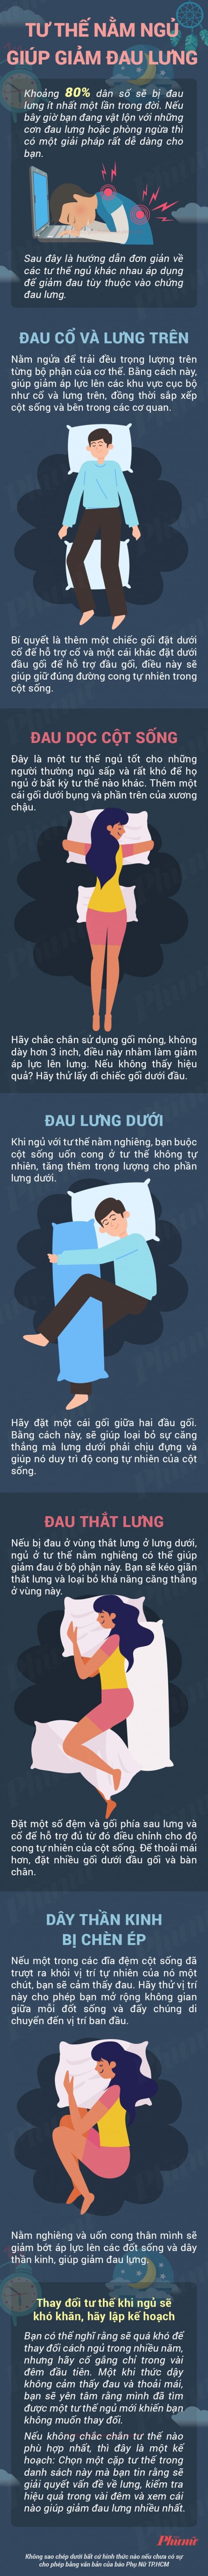 Những tư thế nằm ngủ giúp trị đau lưng